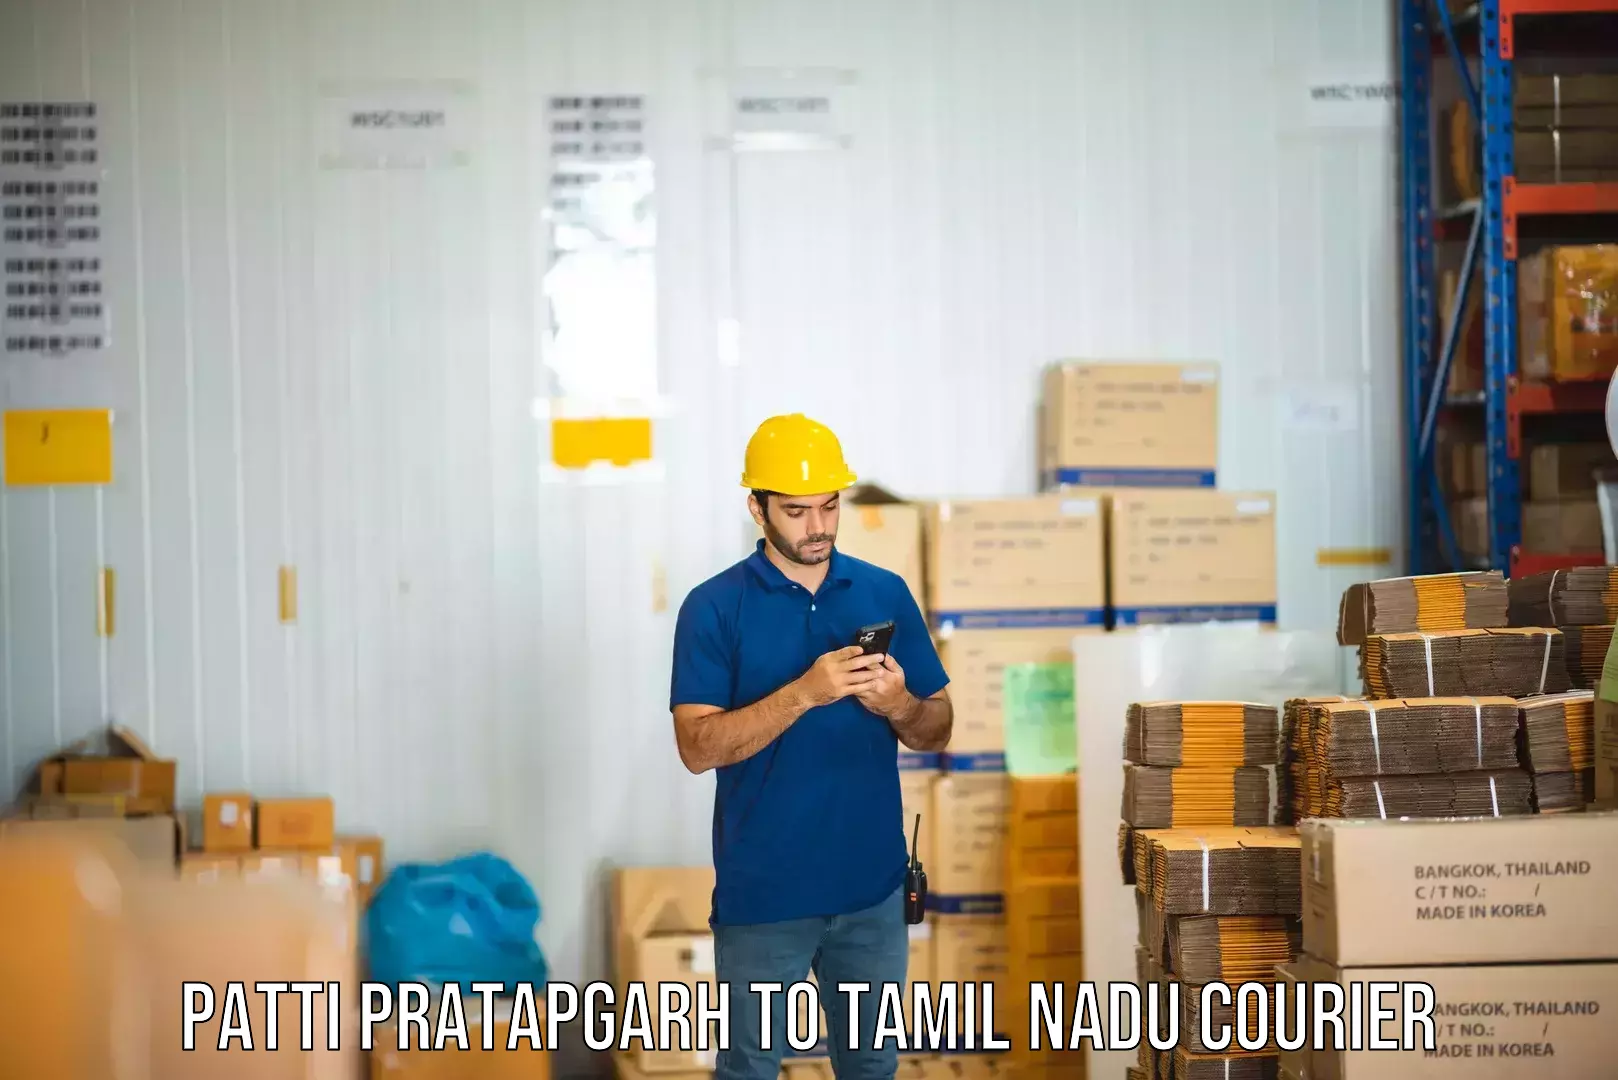 Advanced shipping technology Patti Pratapgarh to IIIT Tiruchirappalli